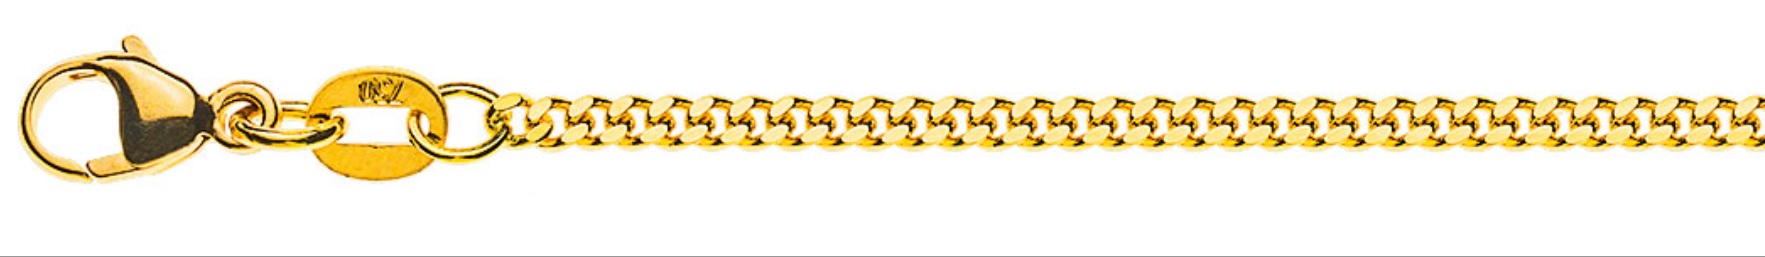 AURONOS Prestige Halskette Gelbgold 18K Panzerkette geschliffen 42cm 2.0mm